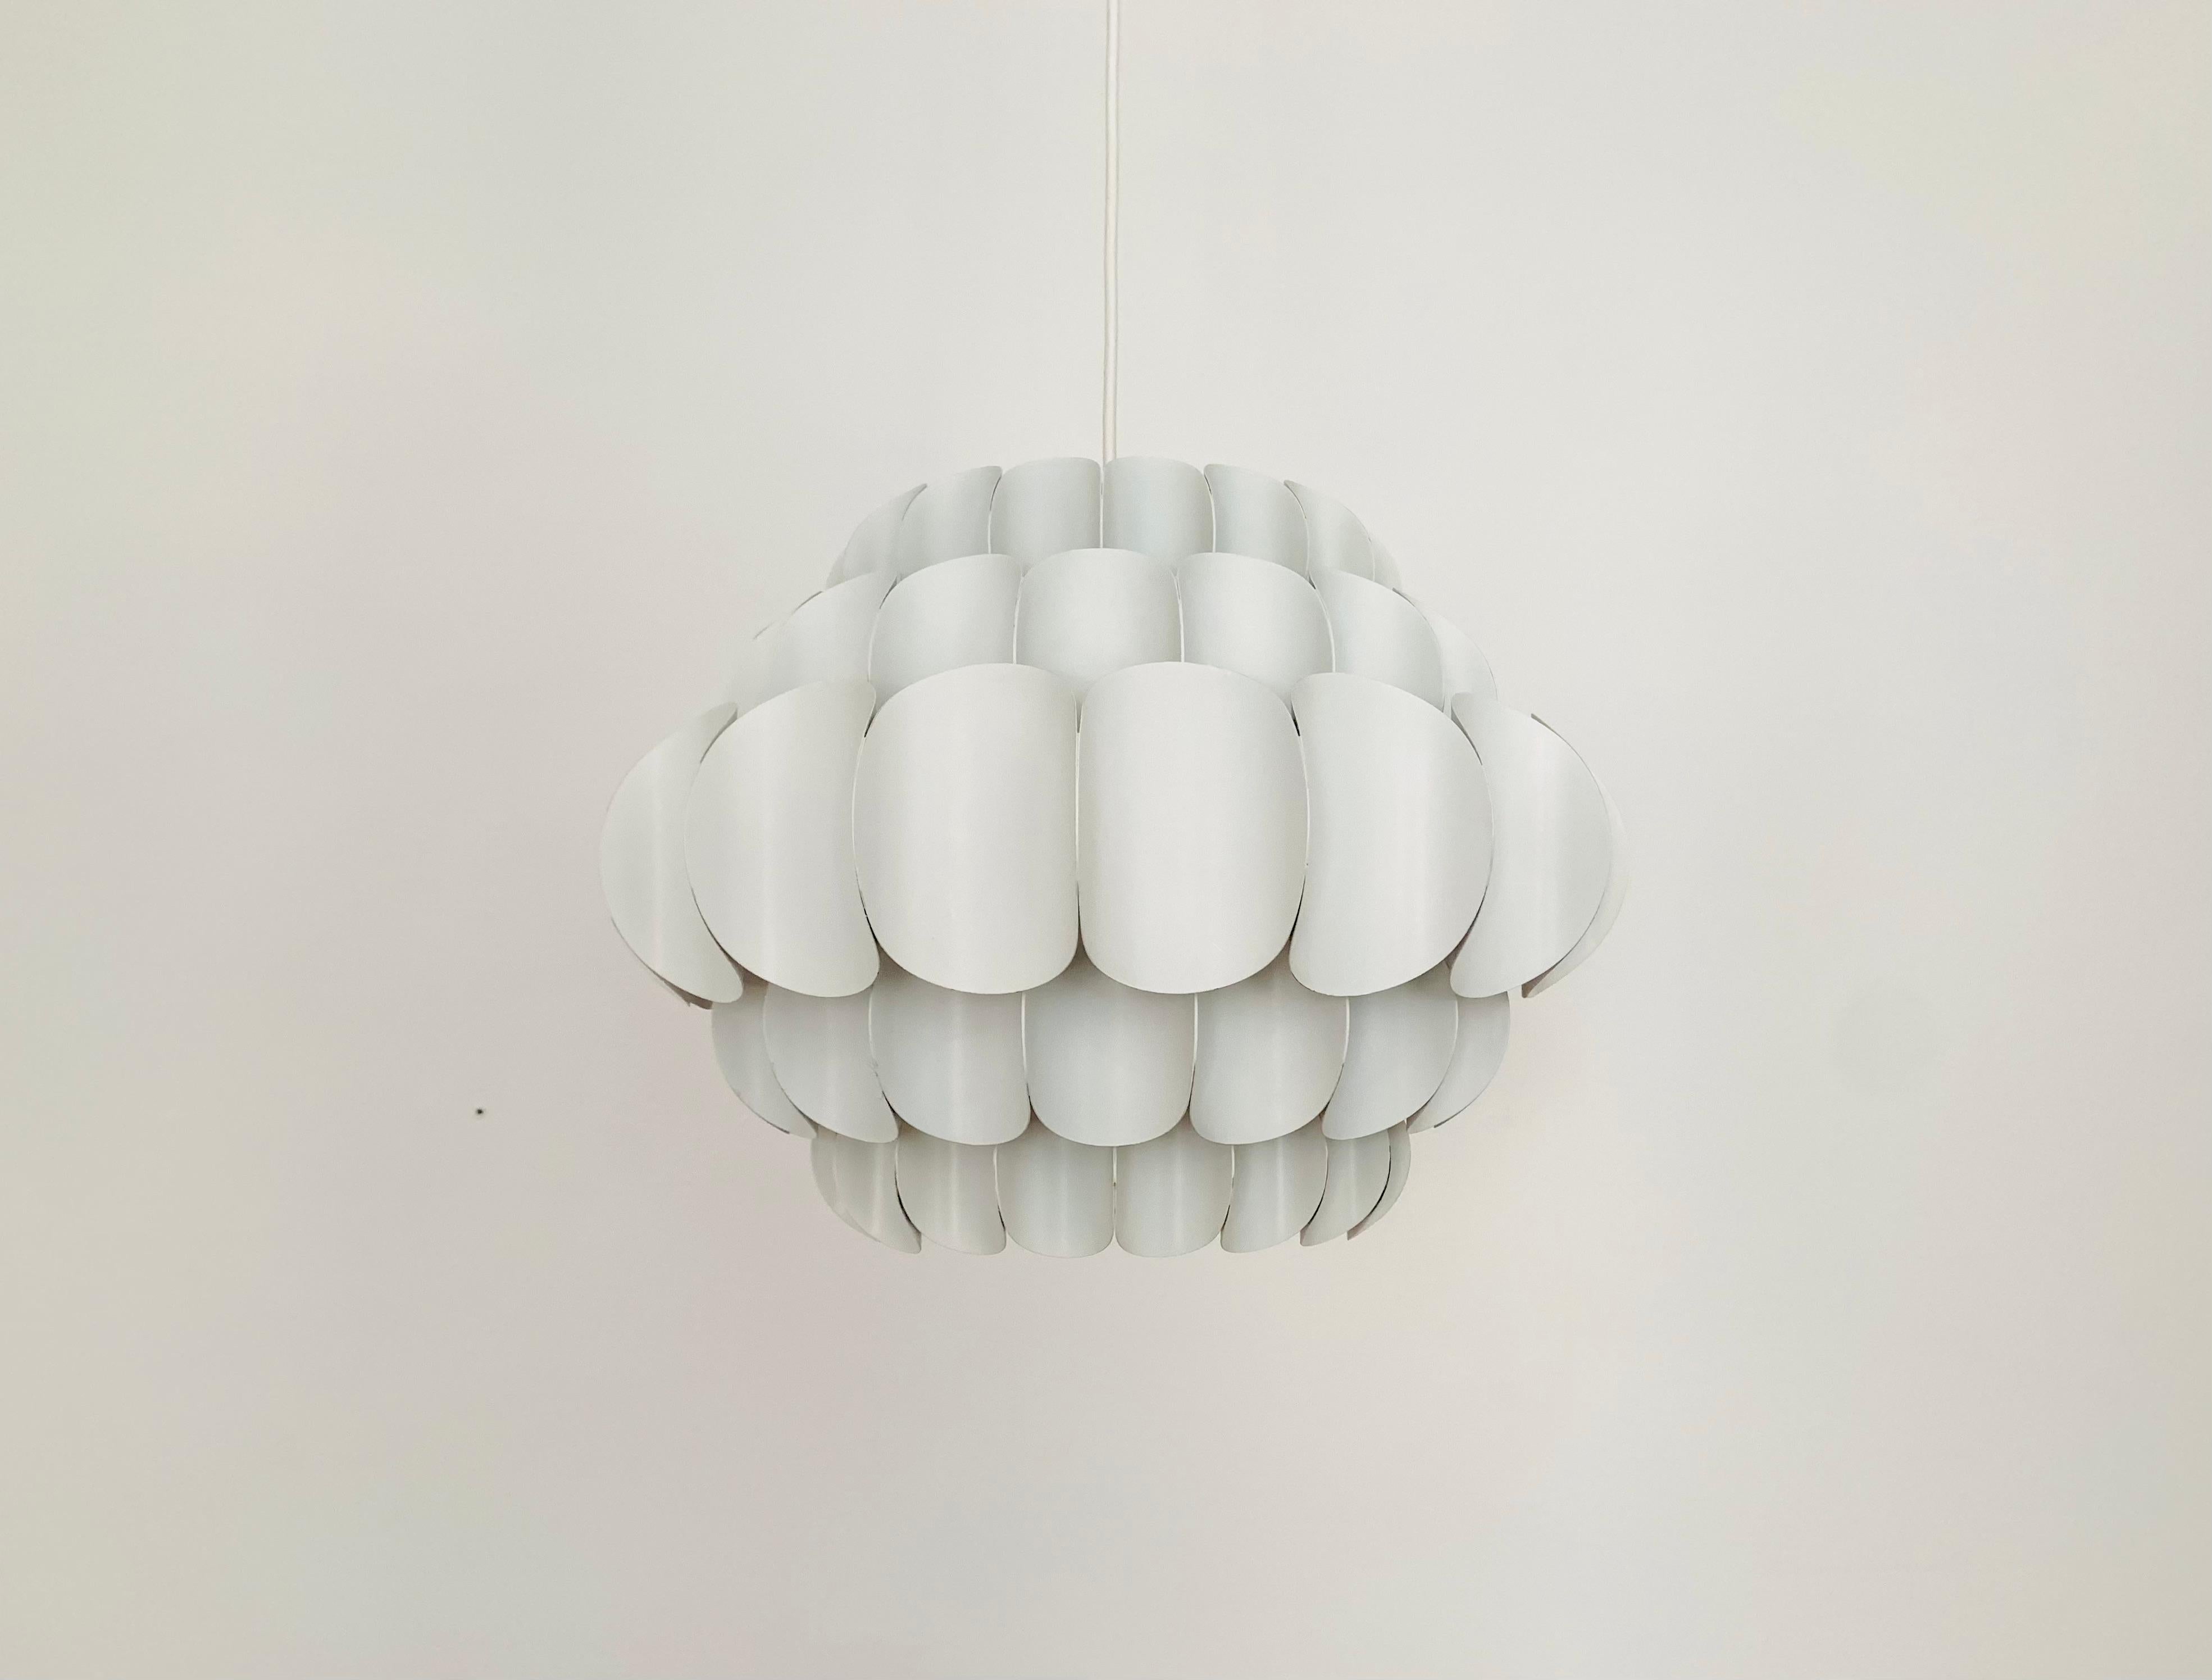 Merveilleuse lampe suspendue en métal blanc de Thorsten Orrling datant des années 1960.
Le design/One crée un fantastique jeu de lumière dans la pièce.
Version large avec 5 rangs.

Condit :

Très bon état vintage avec de légers signes d'usure liés à